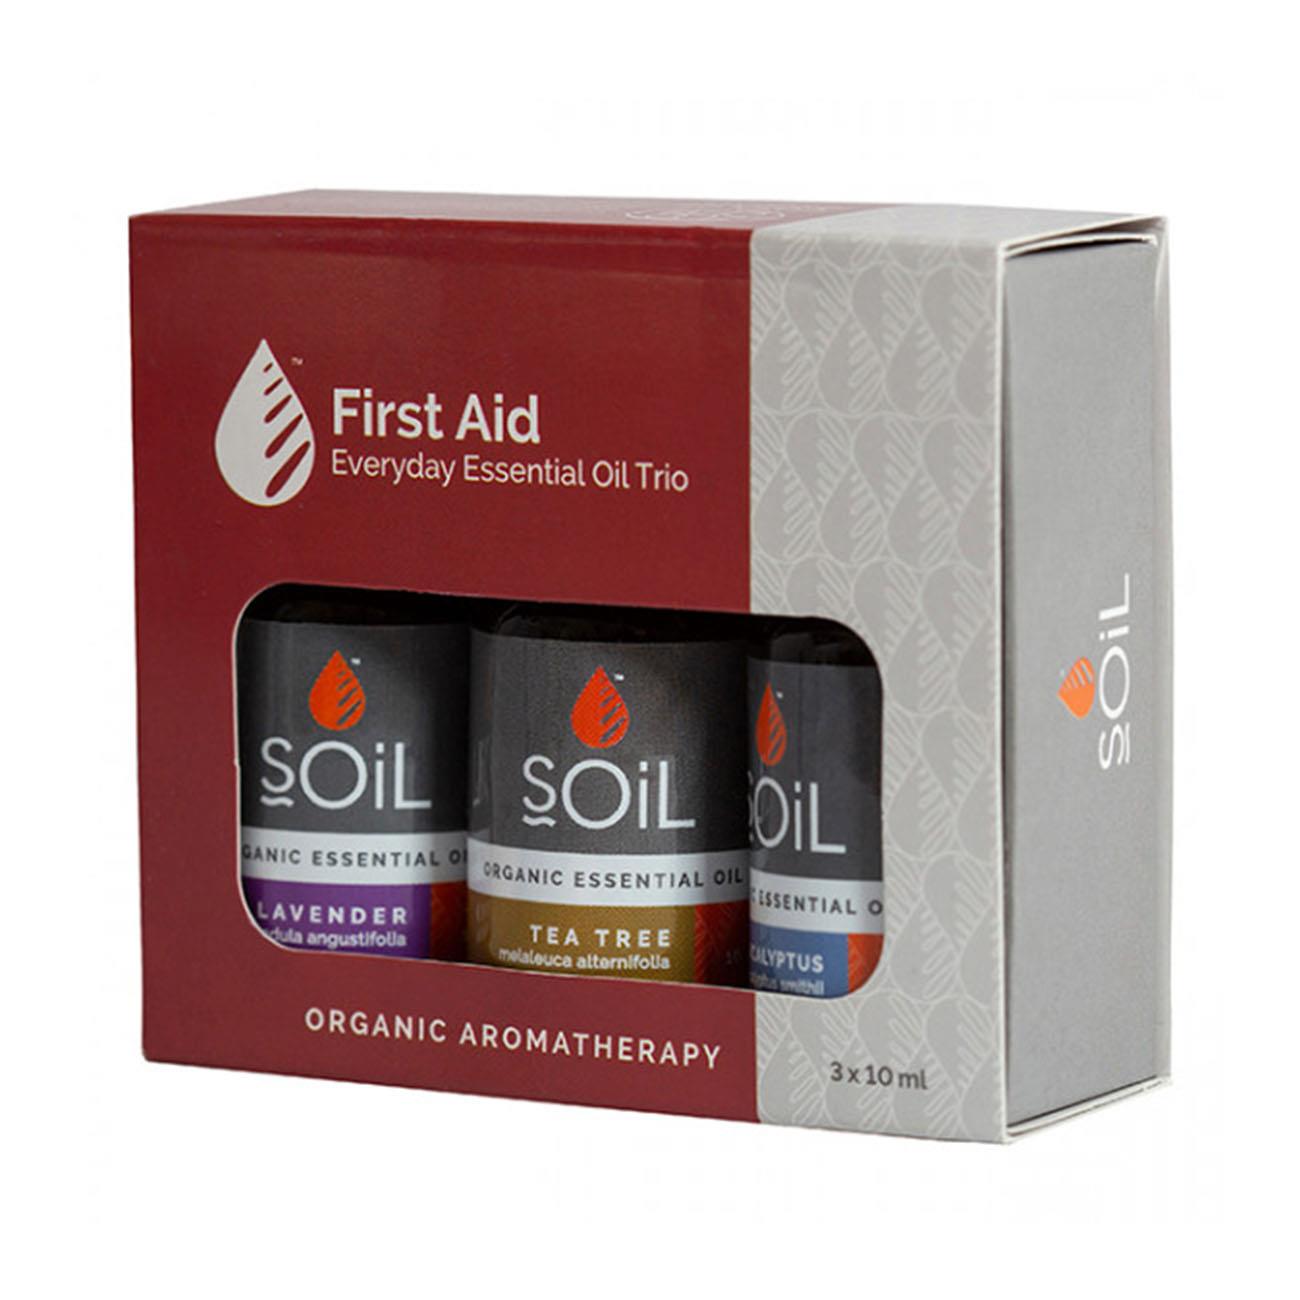 Soil Organic First Aid Essential Oil Gift Set 3x10ml